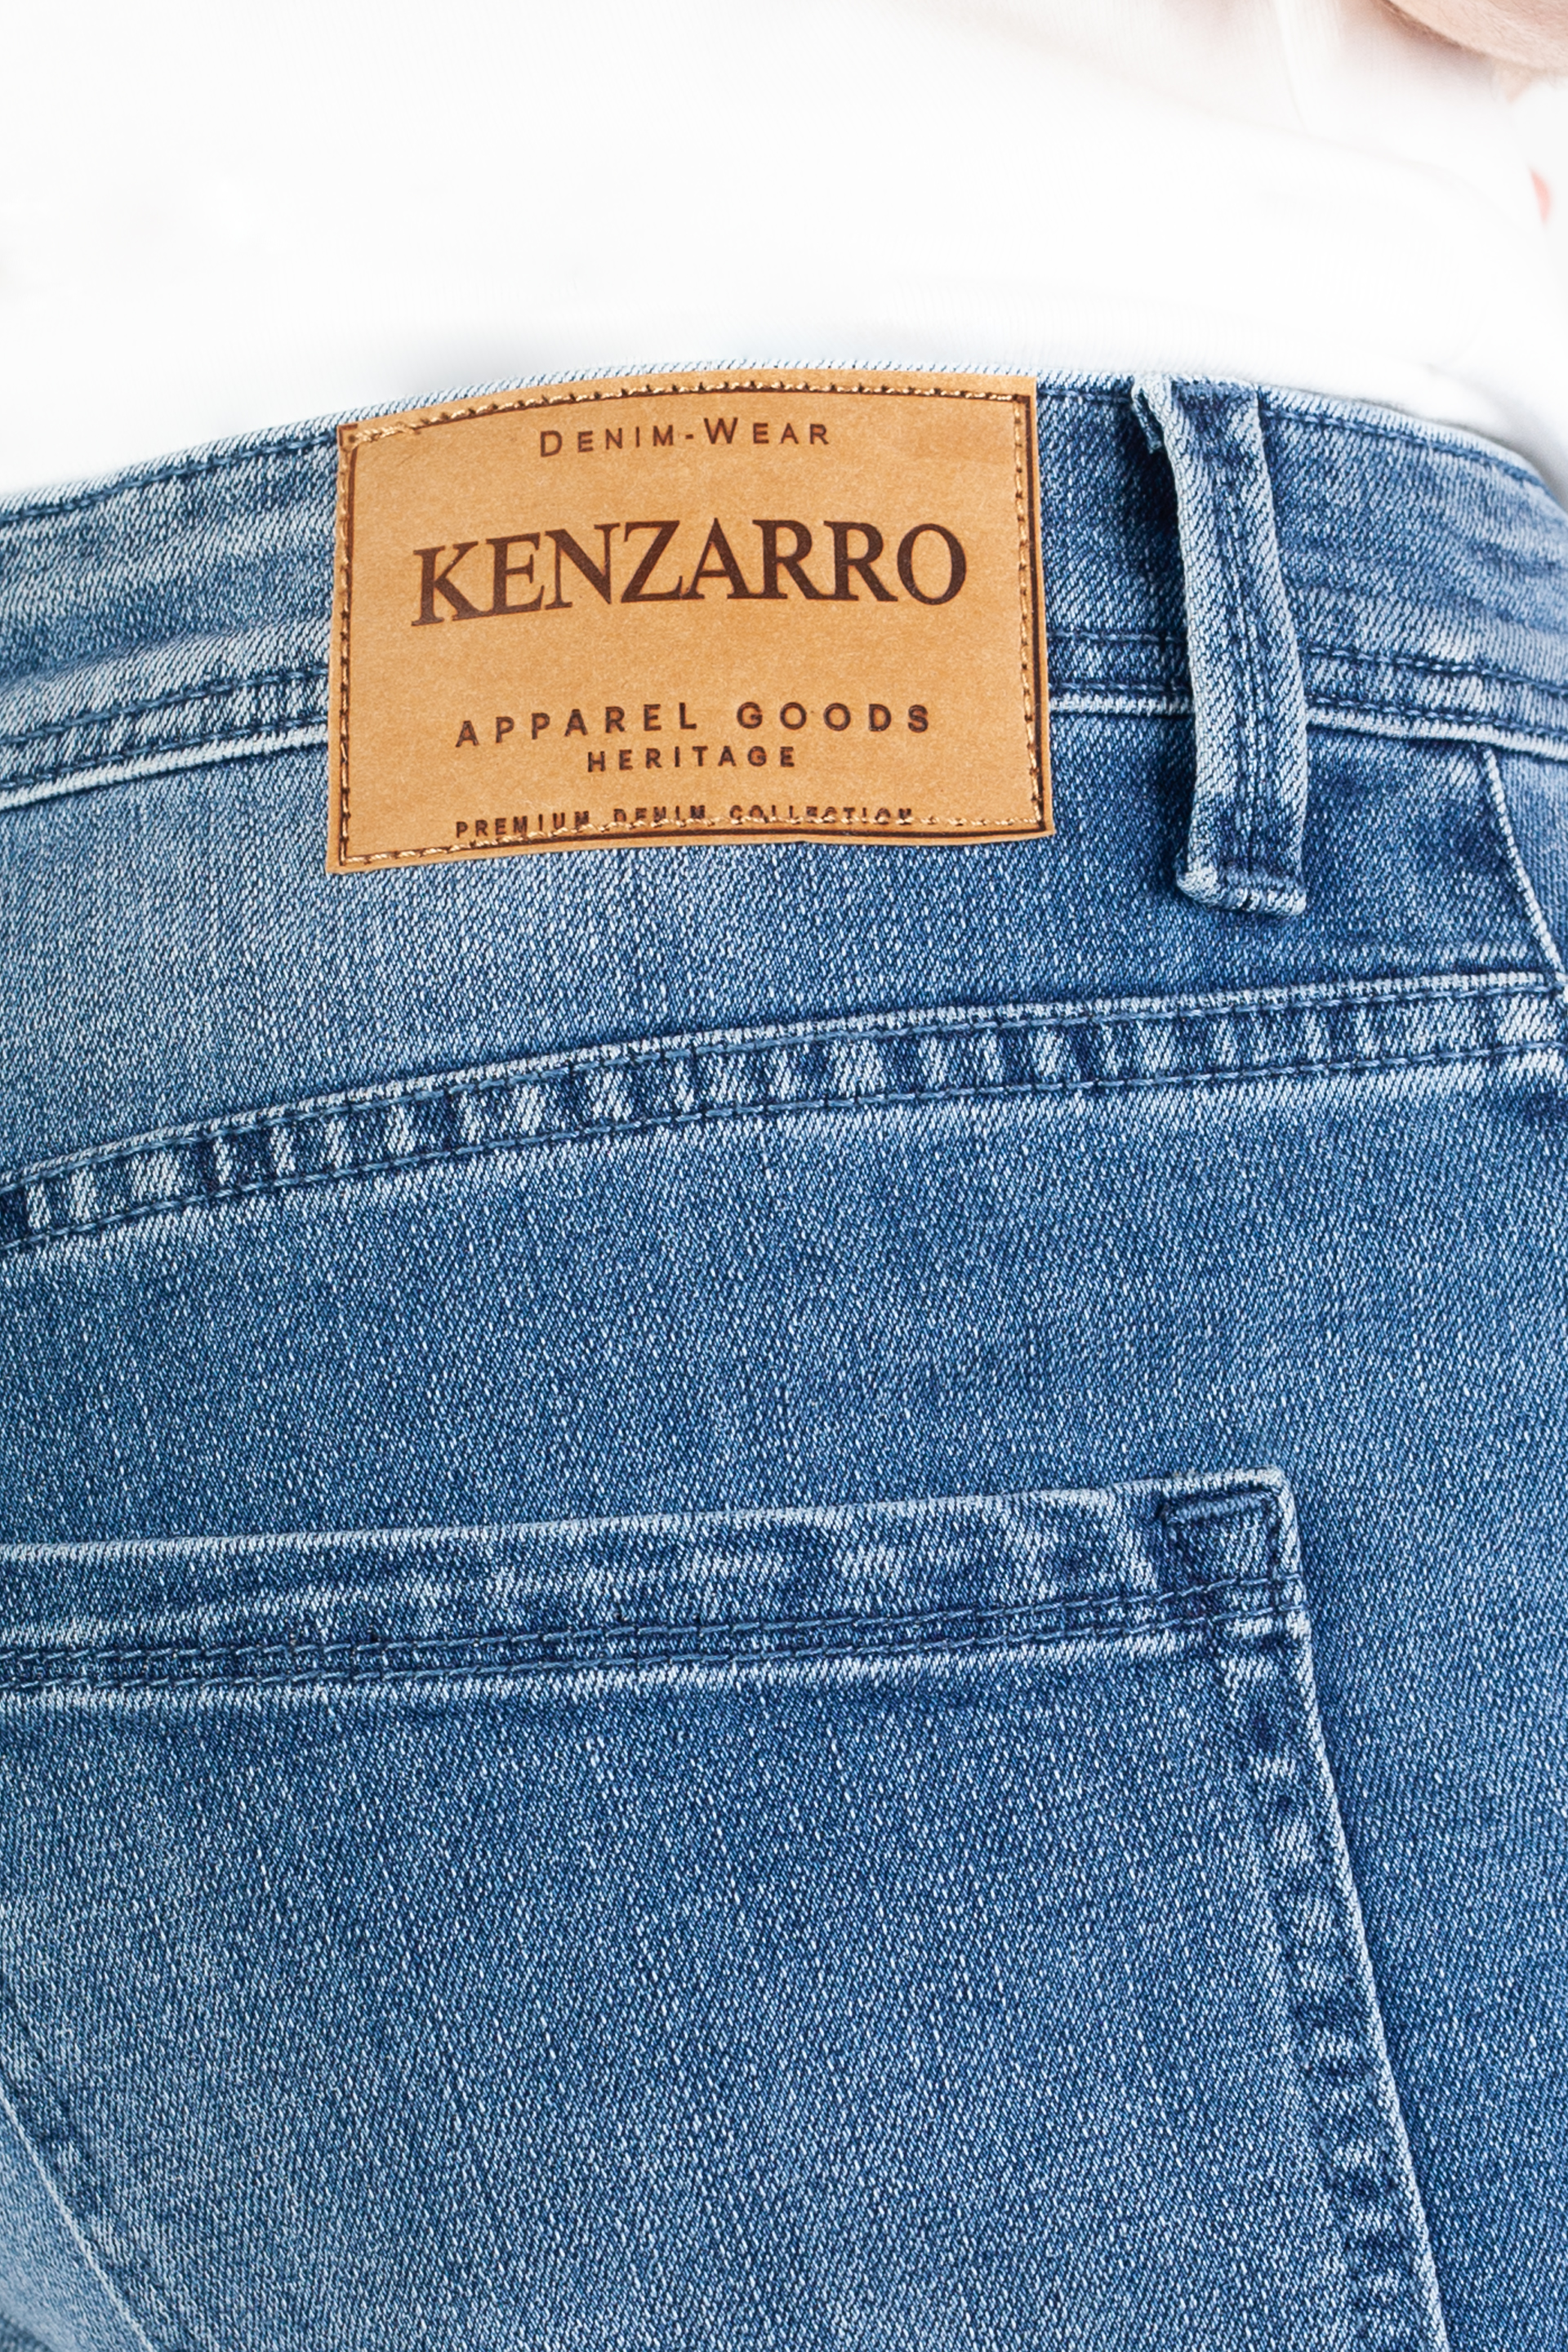 Denim shorts KENZARRO TH37966